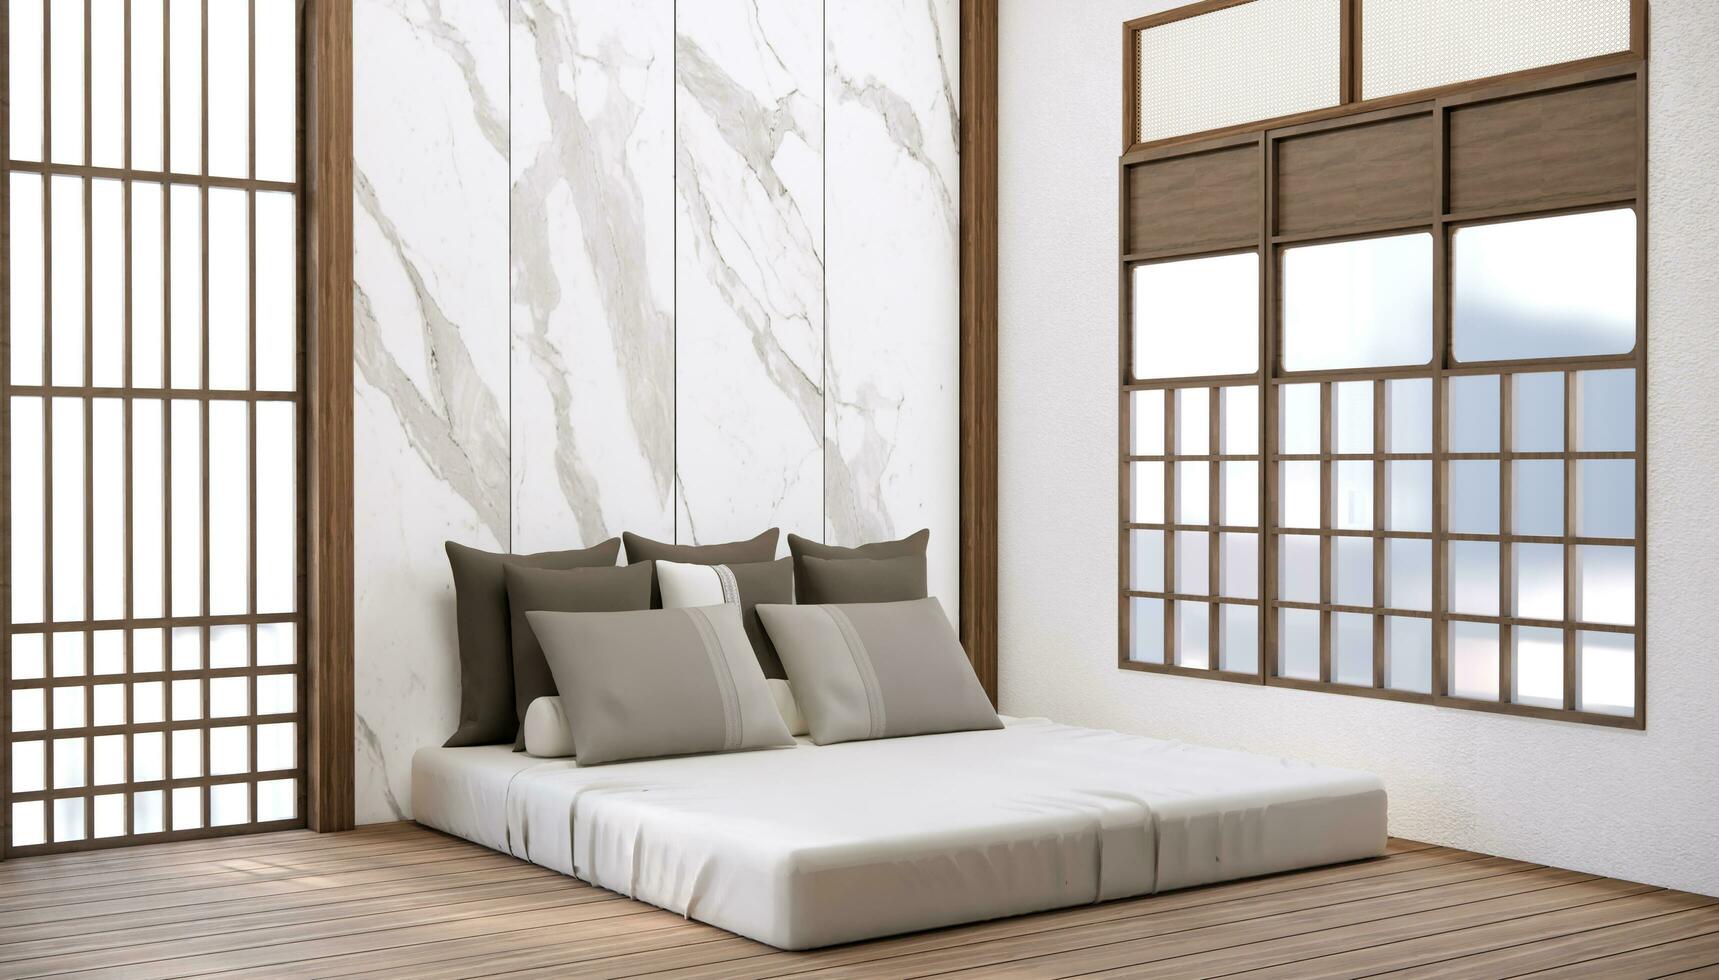 moderno Japón estilo dormitorio decorado y minimalista cama. foto